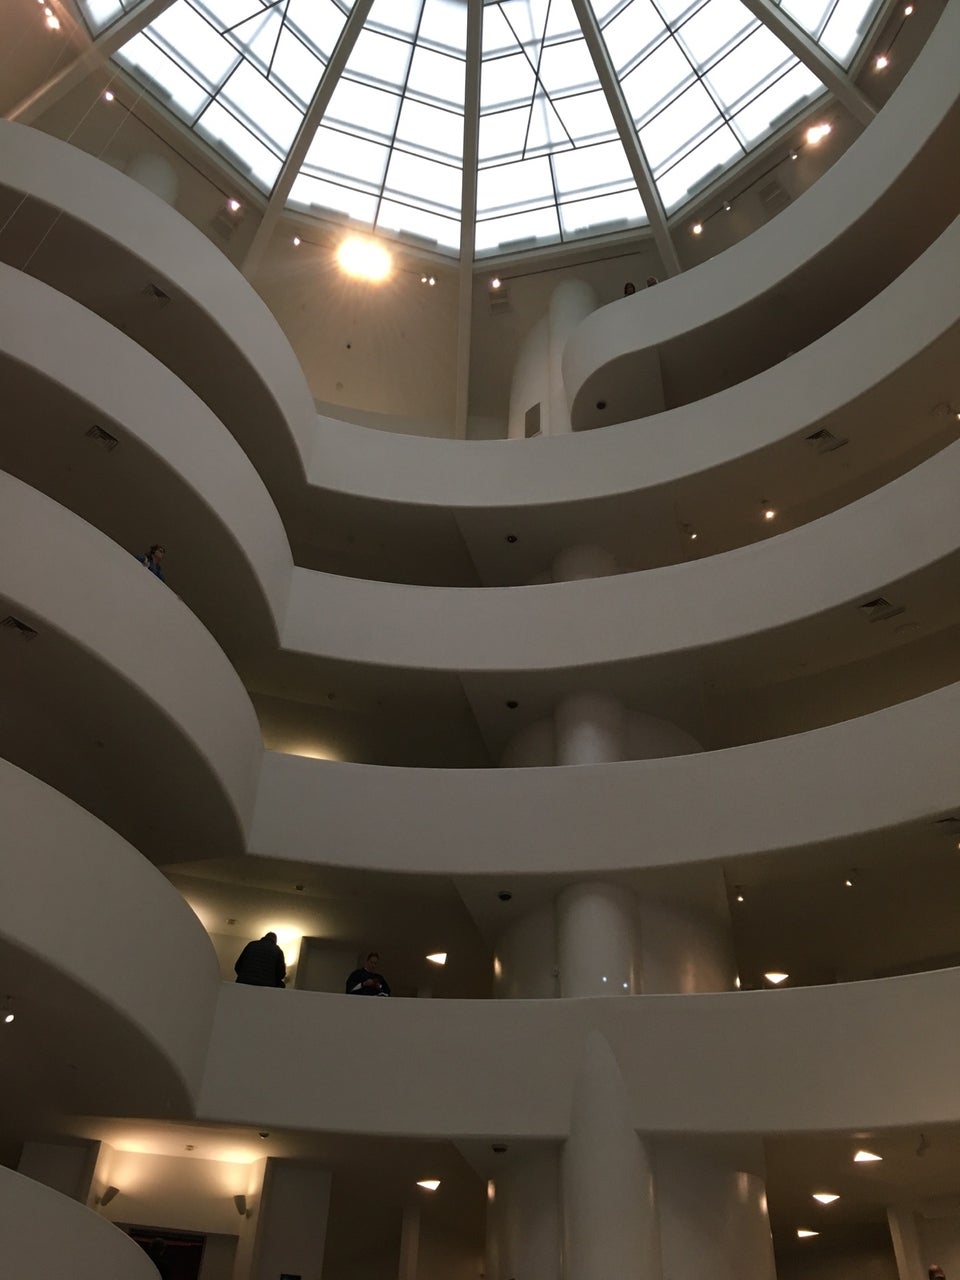 Photo of Guggenheim Museum